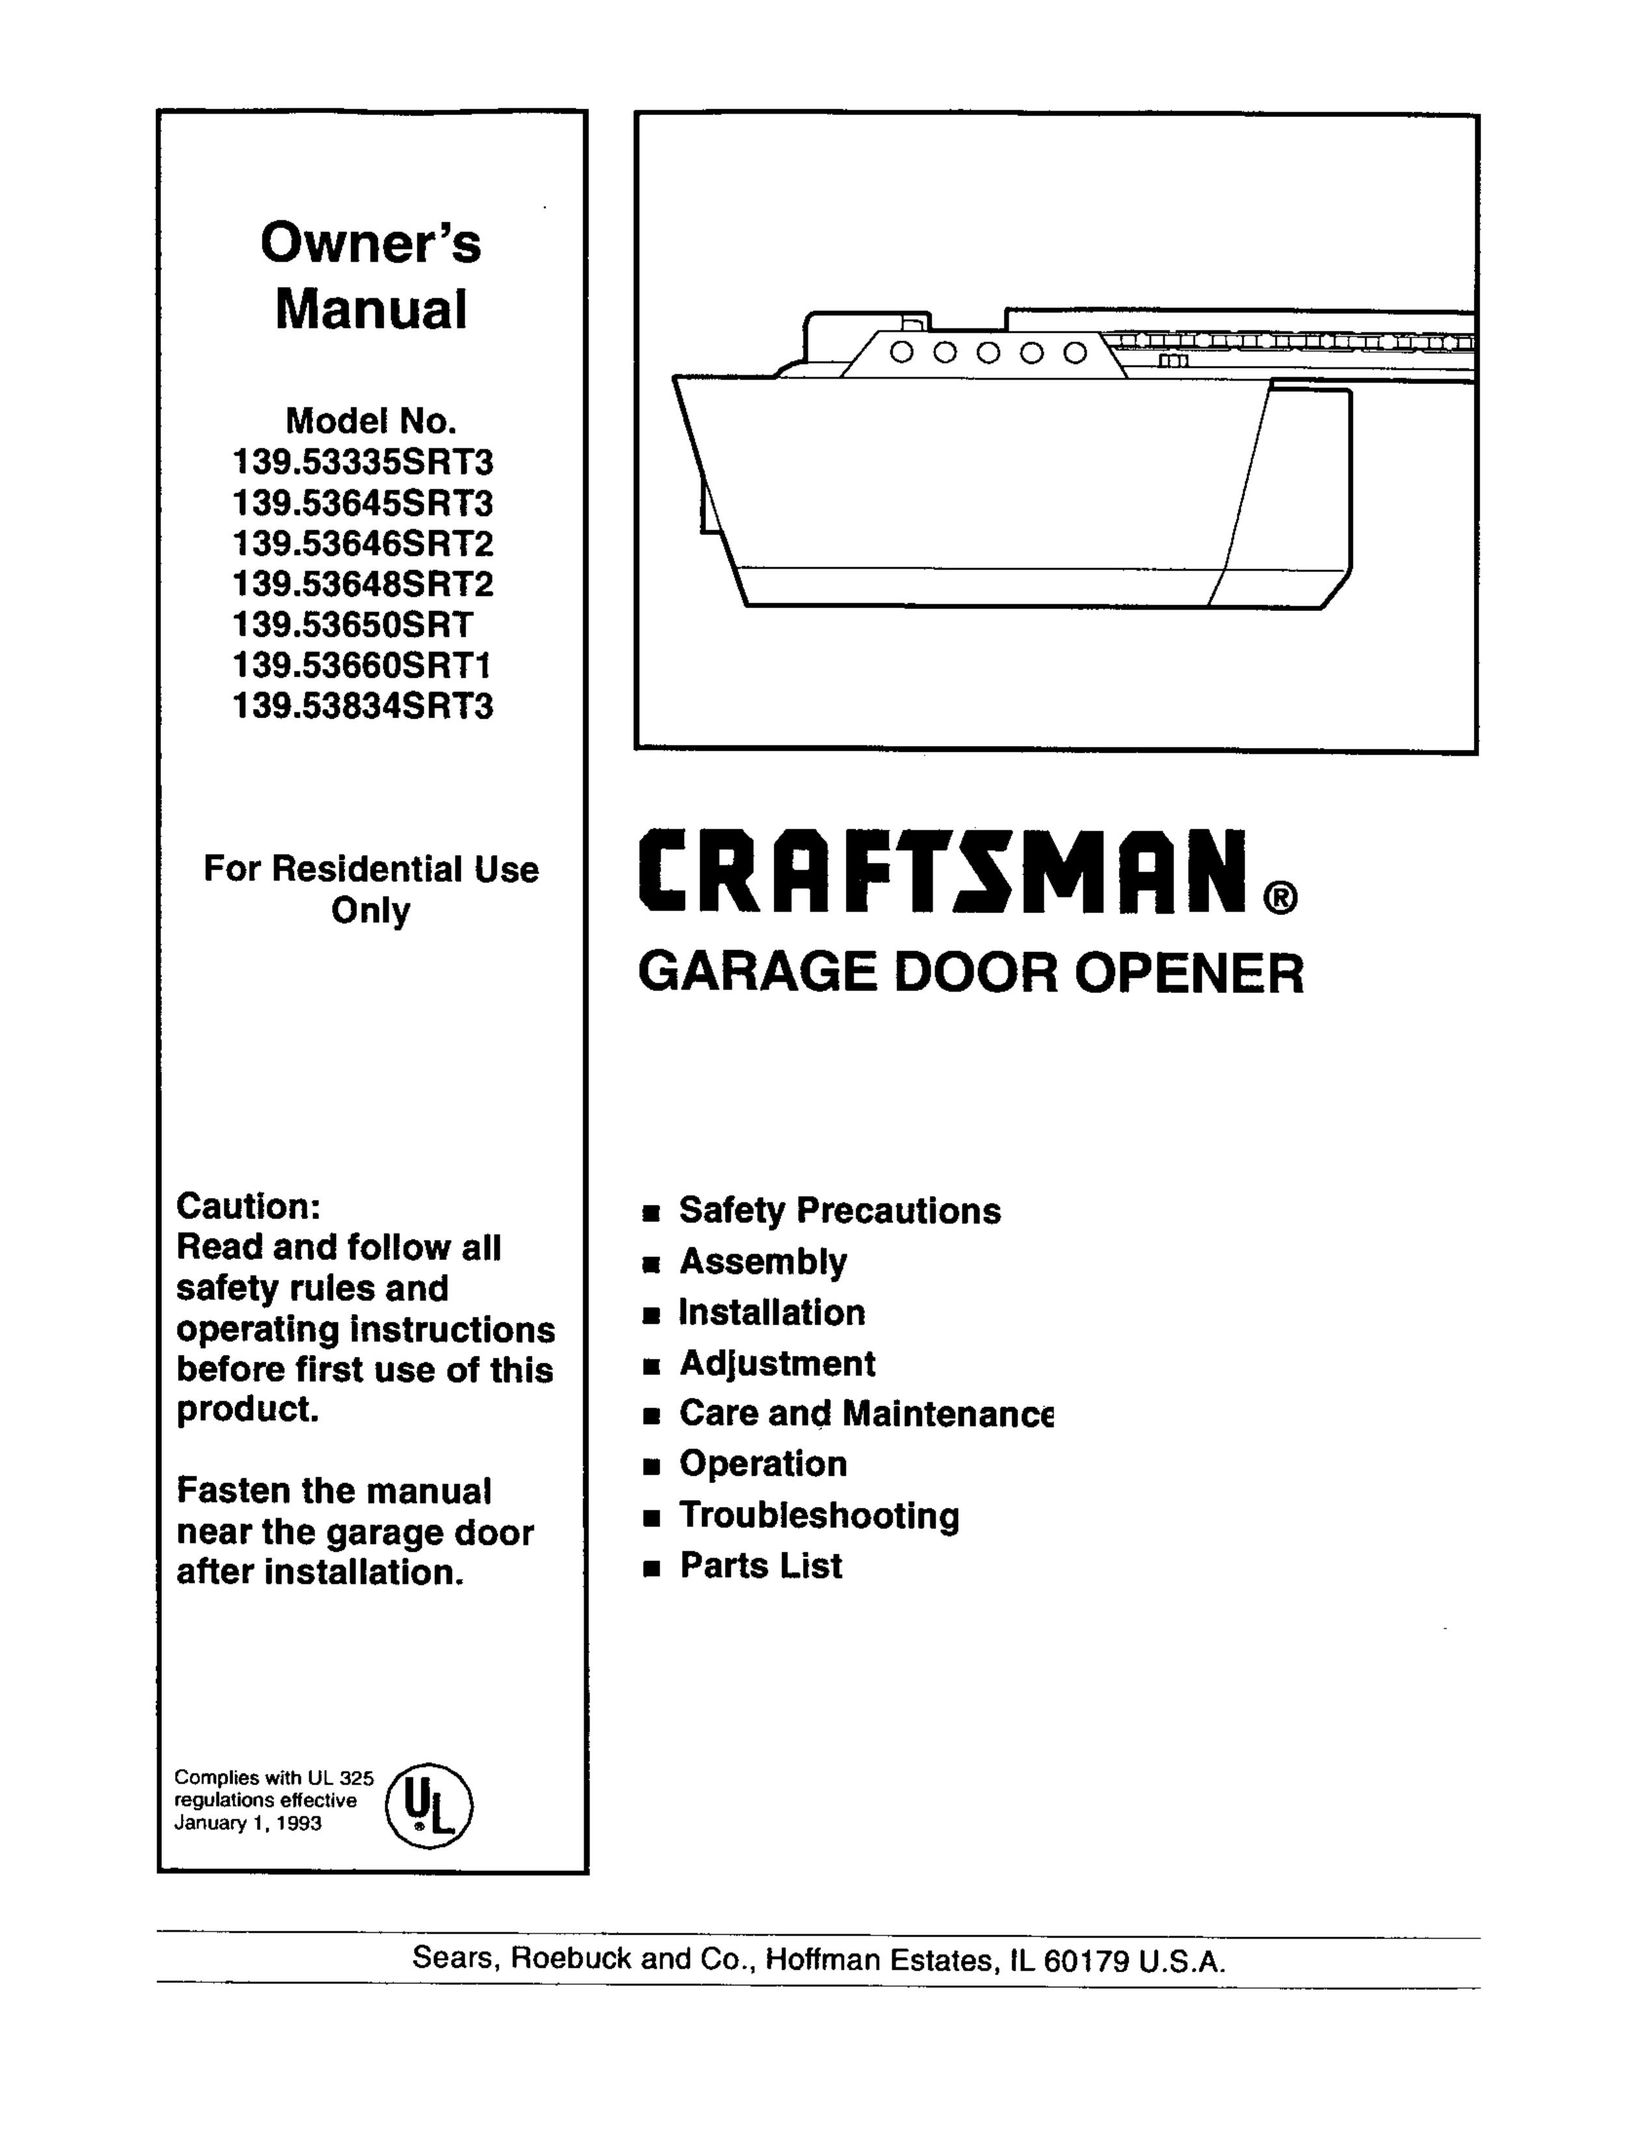 Craftsman 139.53660SRT1 Garage Door Opener User Manual